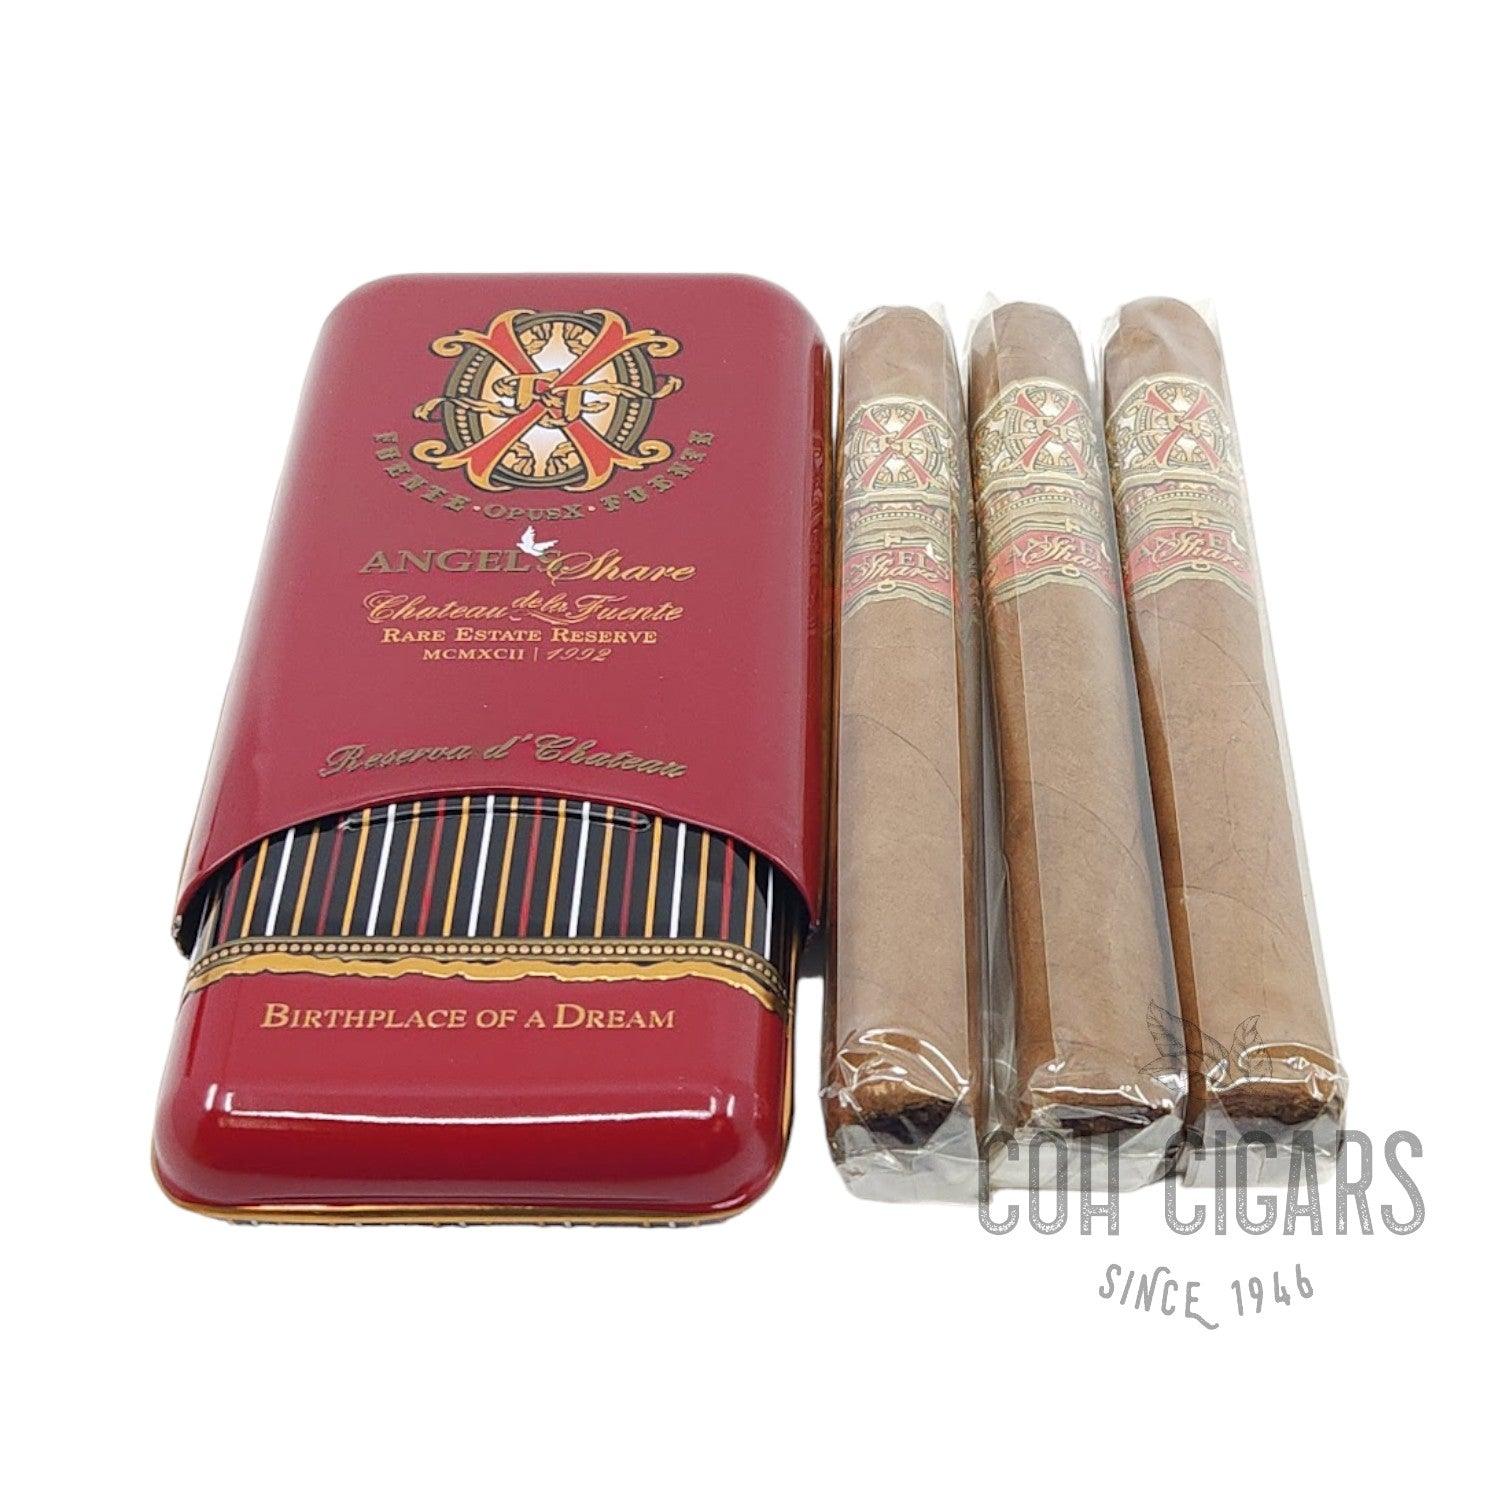 Arturo Fuente Cigar | Fuente Fuente Opusx Angel's Share Reserva D'Chateau Tin | Box 3 - hk.cohcigars